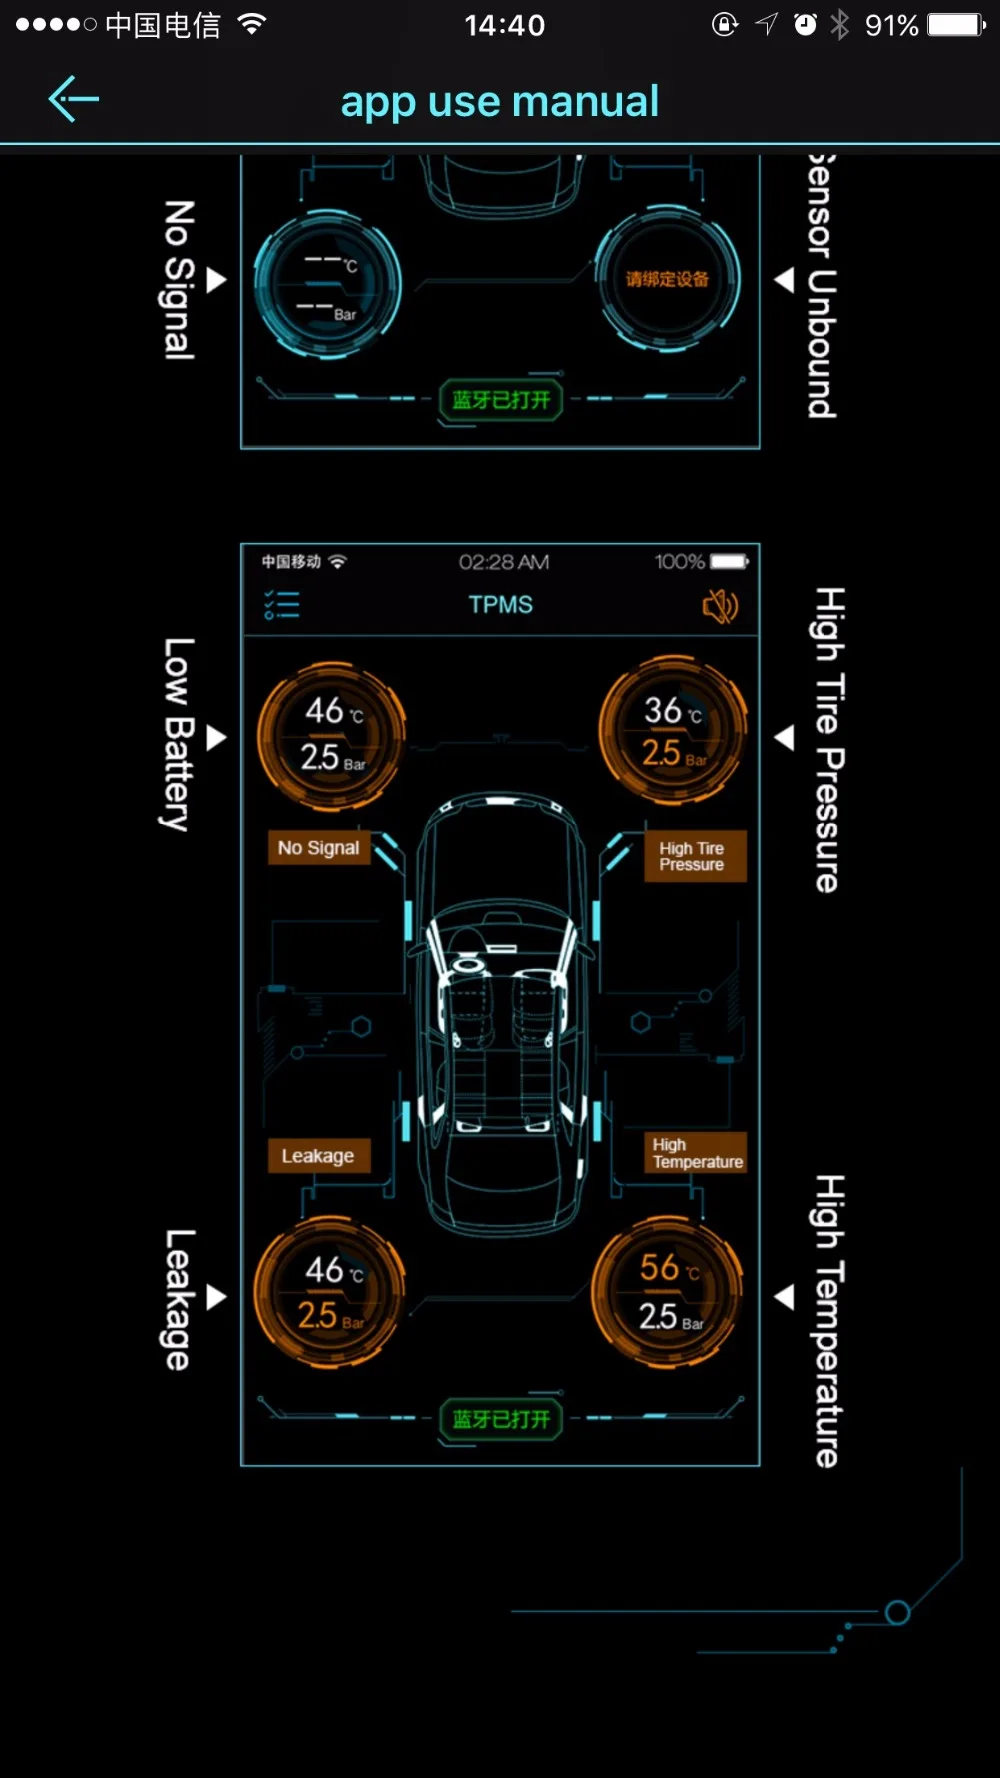 TPMS система мониторинга давления в шинах 4 внешних датчика Bluetooth подключение работает для Android/IOS TPMS автомобиля Предупреждение о температуре